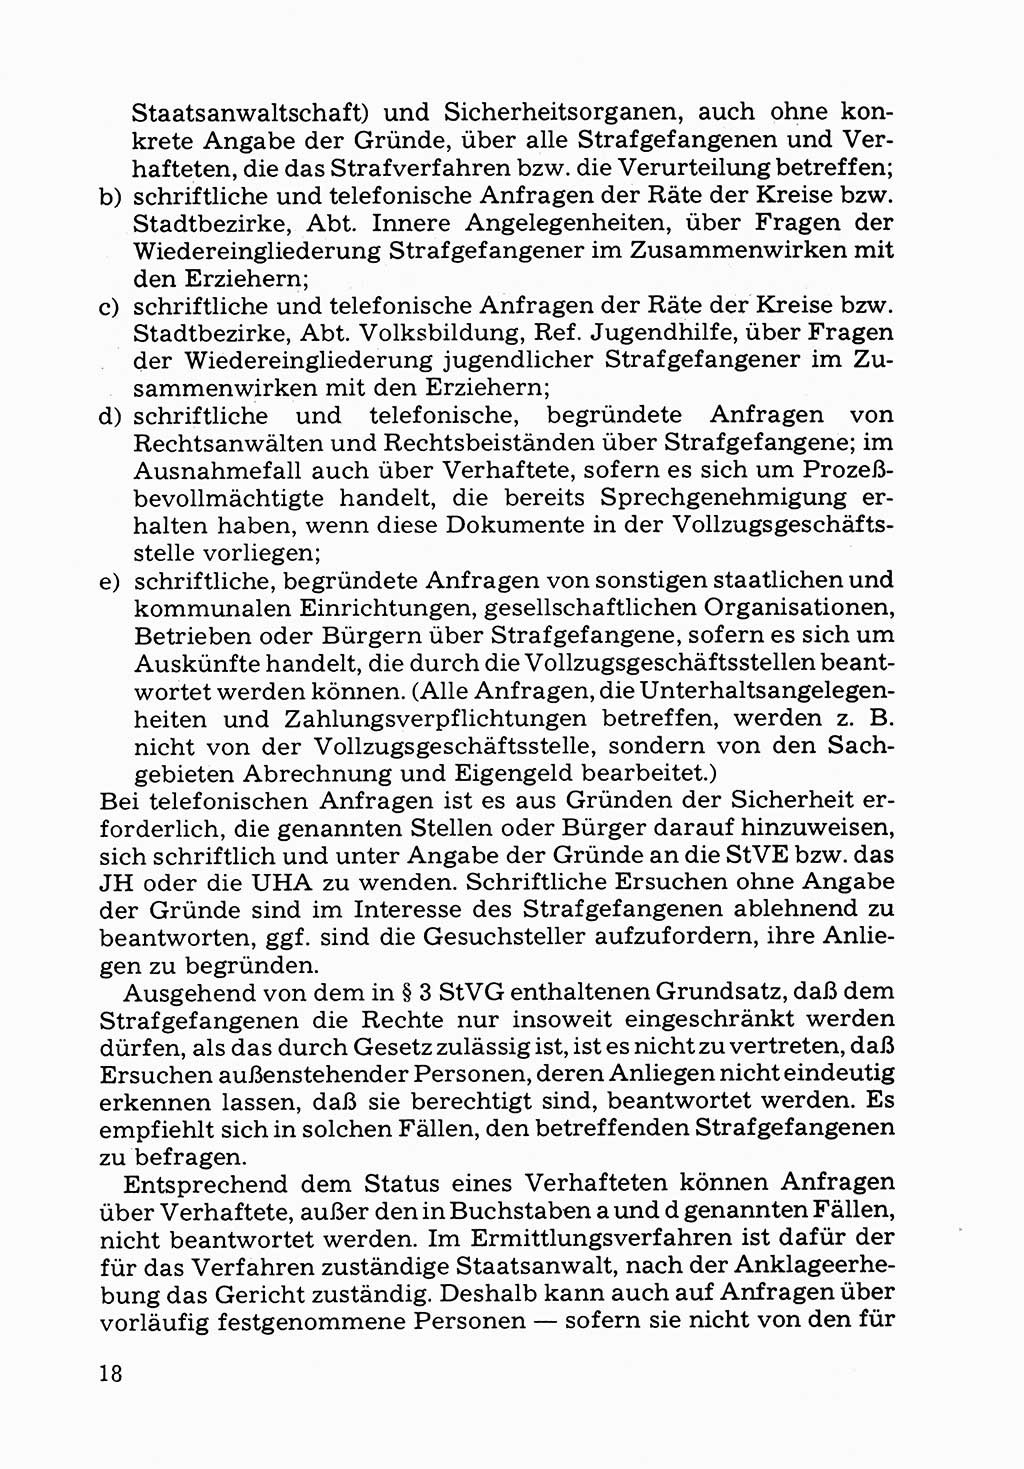 Verwaltungsmäßige Aufgaben beim Vollzug der Untersuchungshaft (U-Haft) sowie der Strafen mit Freiheitsentzug (SV) [Deutsche Demokratische Republik (DDR)] 1980, Seite 18 (Aufg. Vollz. U-Haft SV DDR 1980, S. 18)